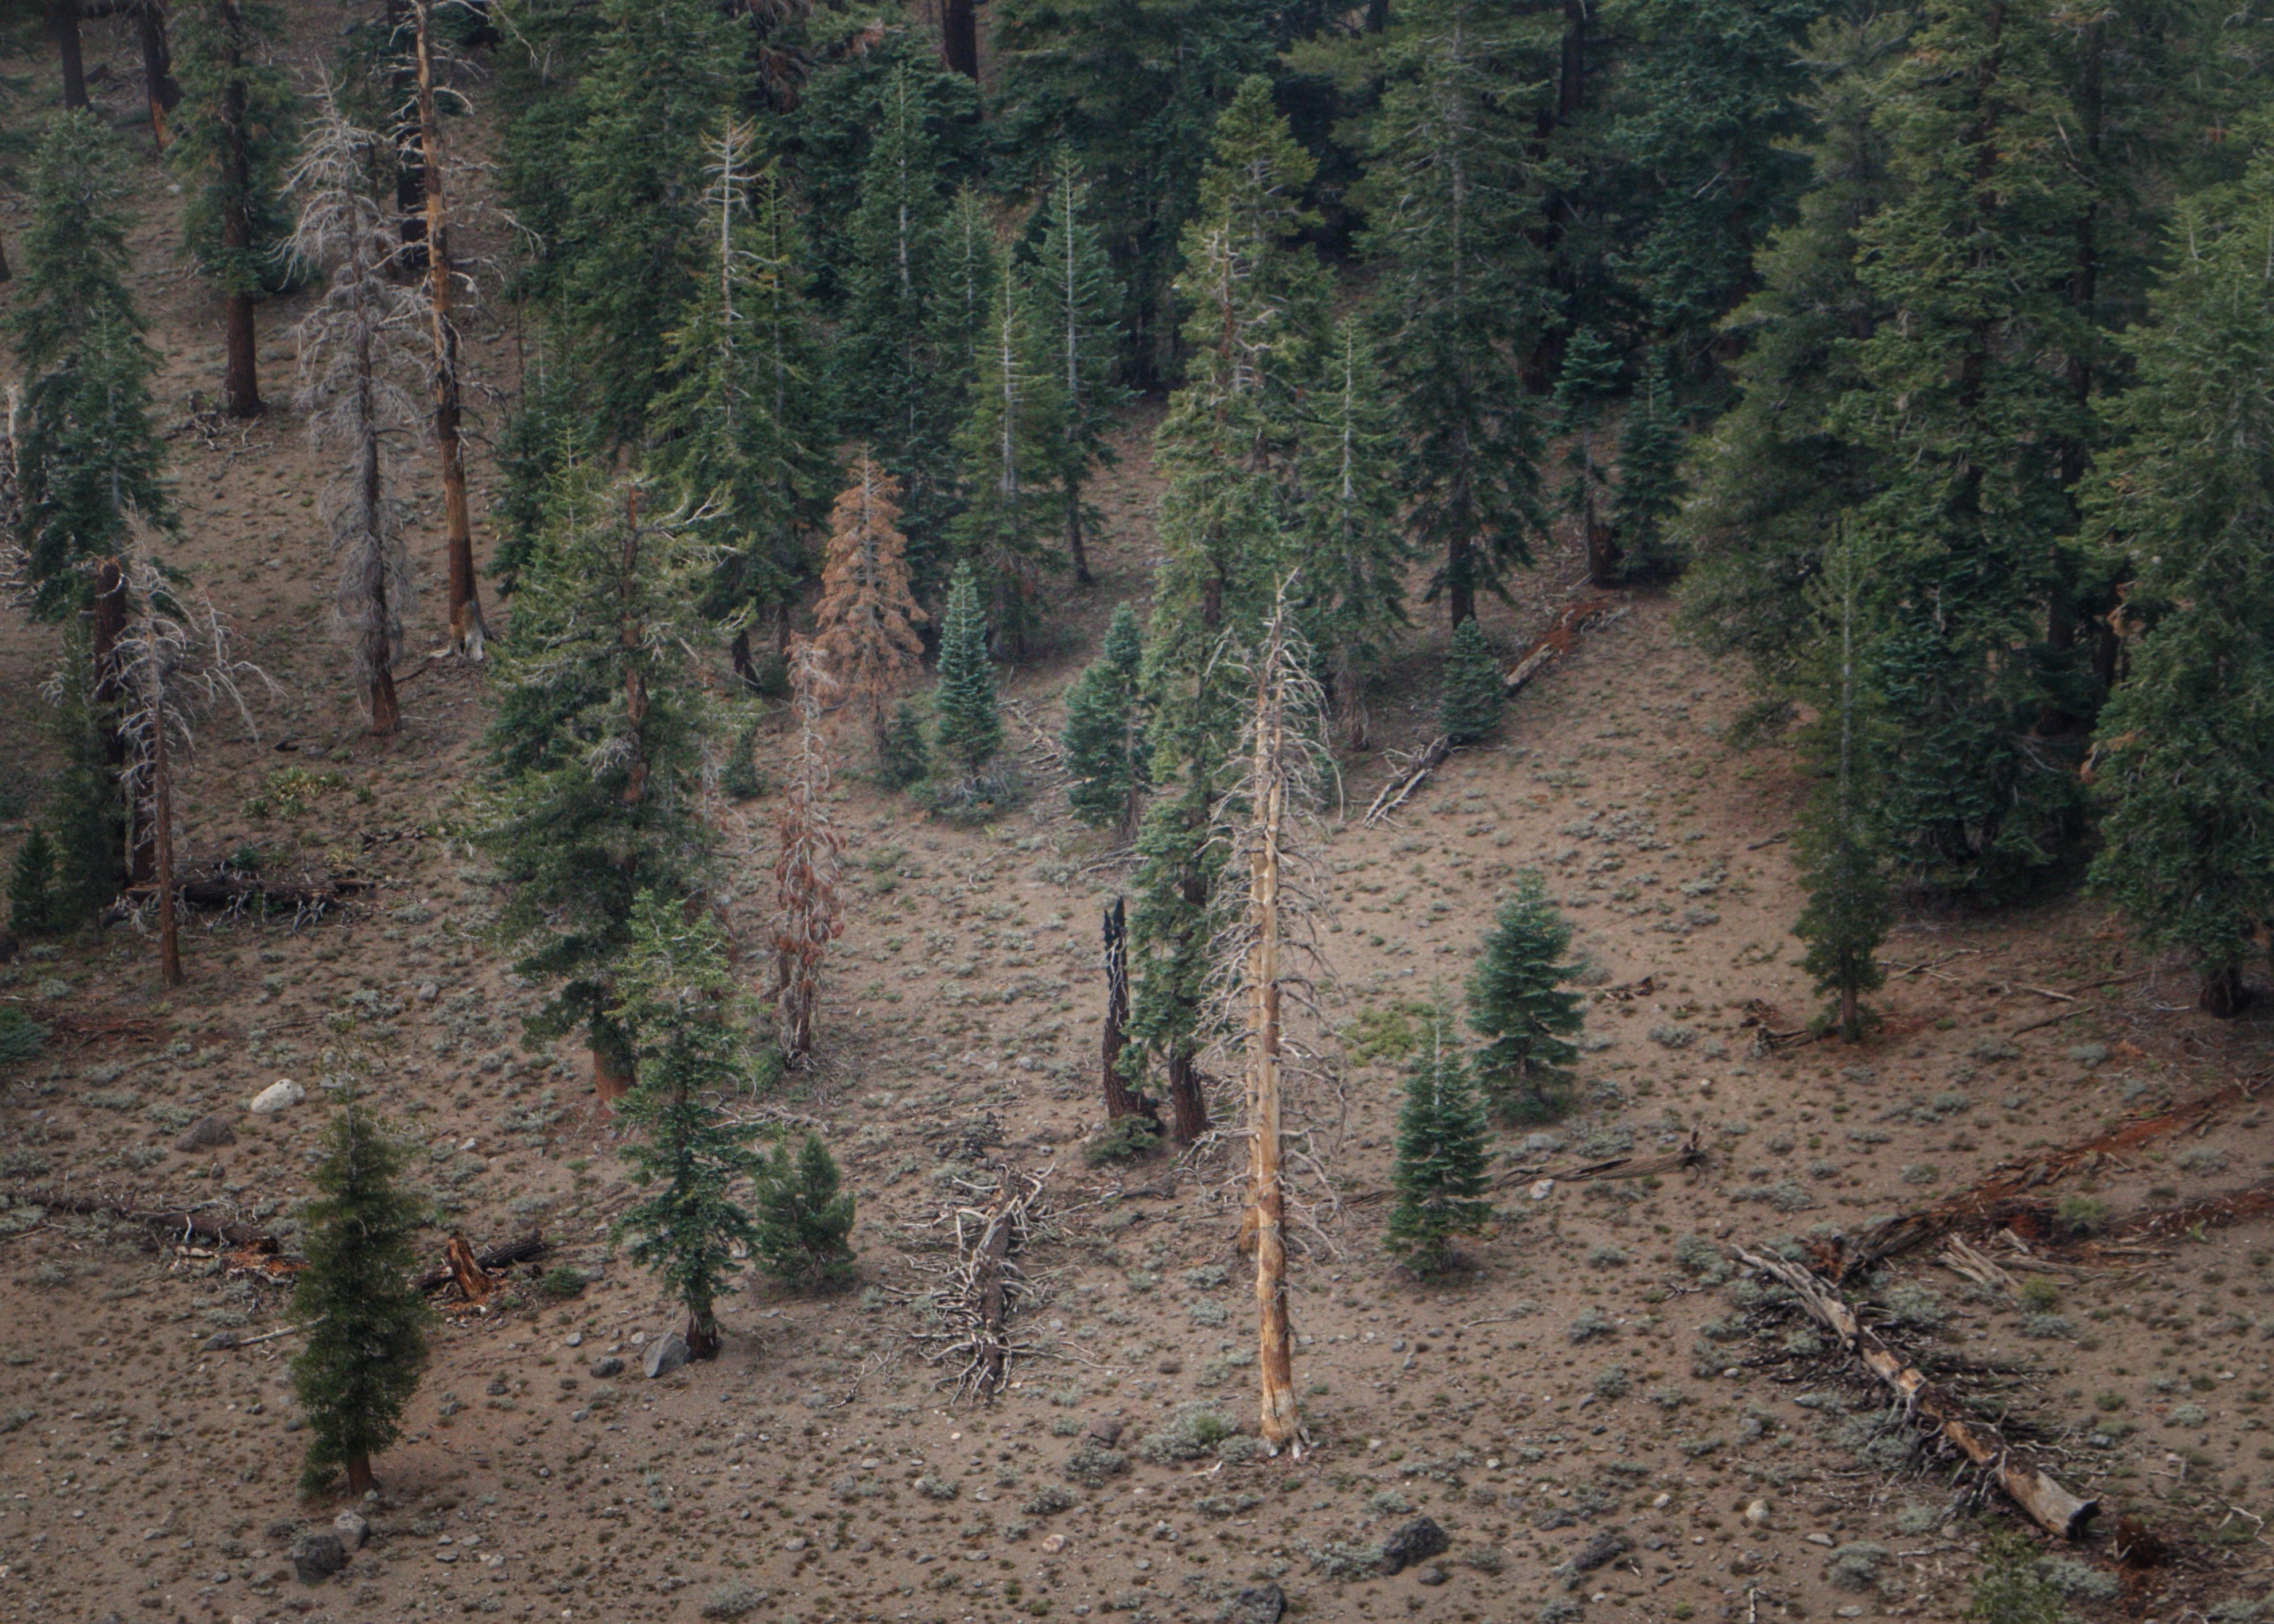 Incident Photo for the Yosemite September Lightning Fire